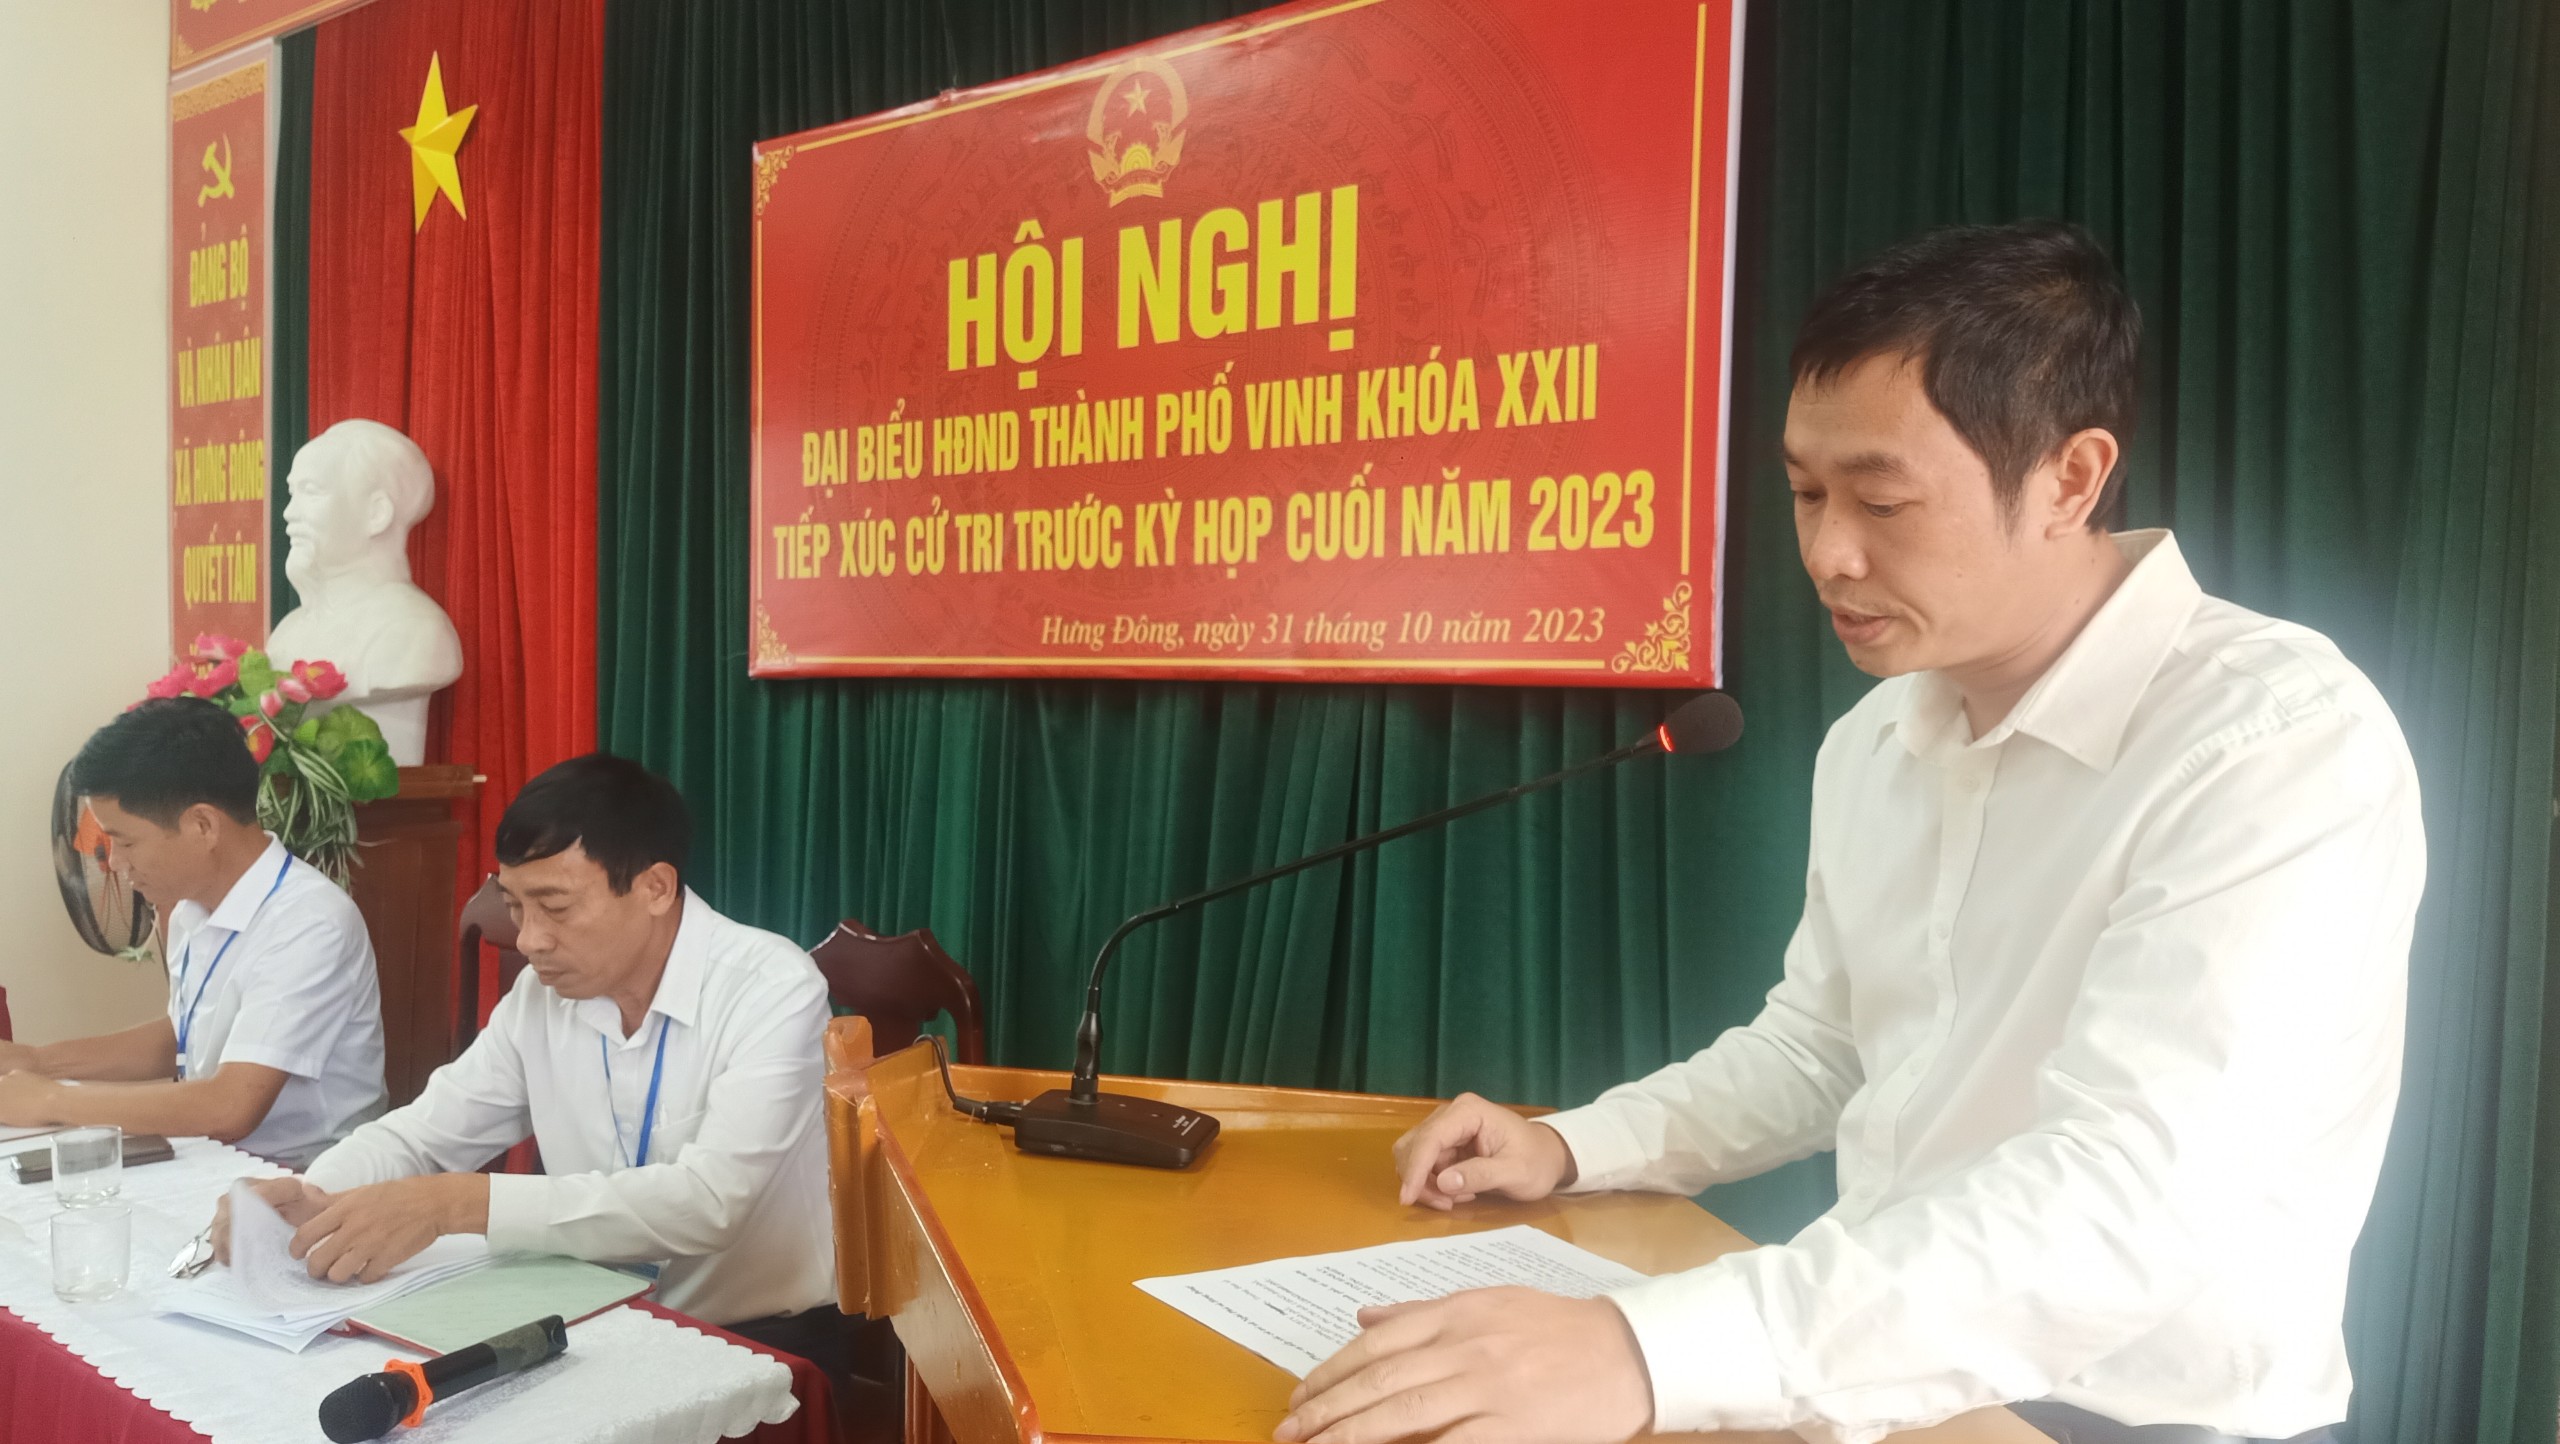 Hình ảnh đồng chí Trần Trung Hải báo cáo trước hội nghị